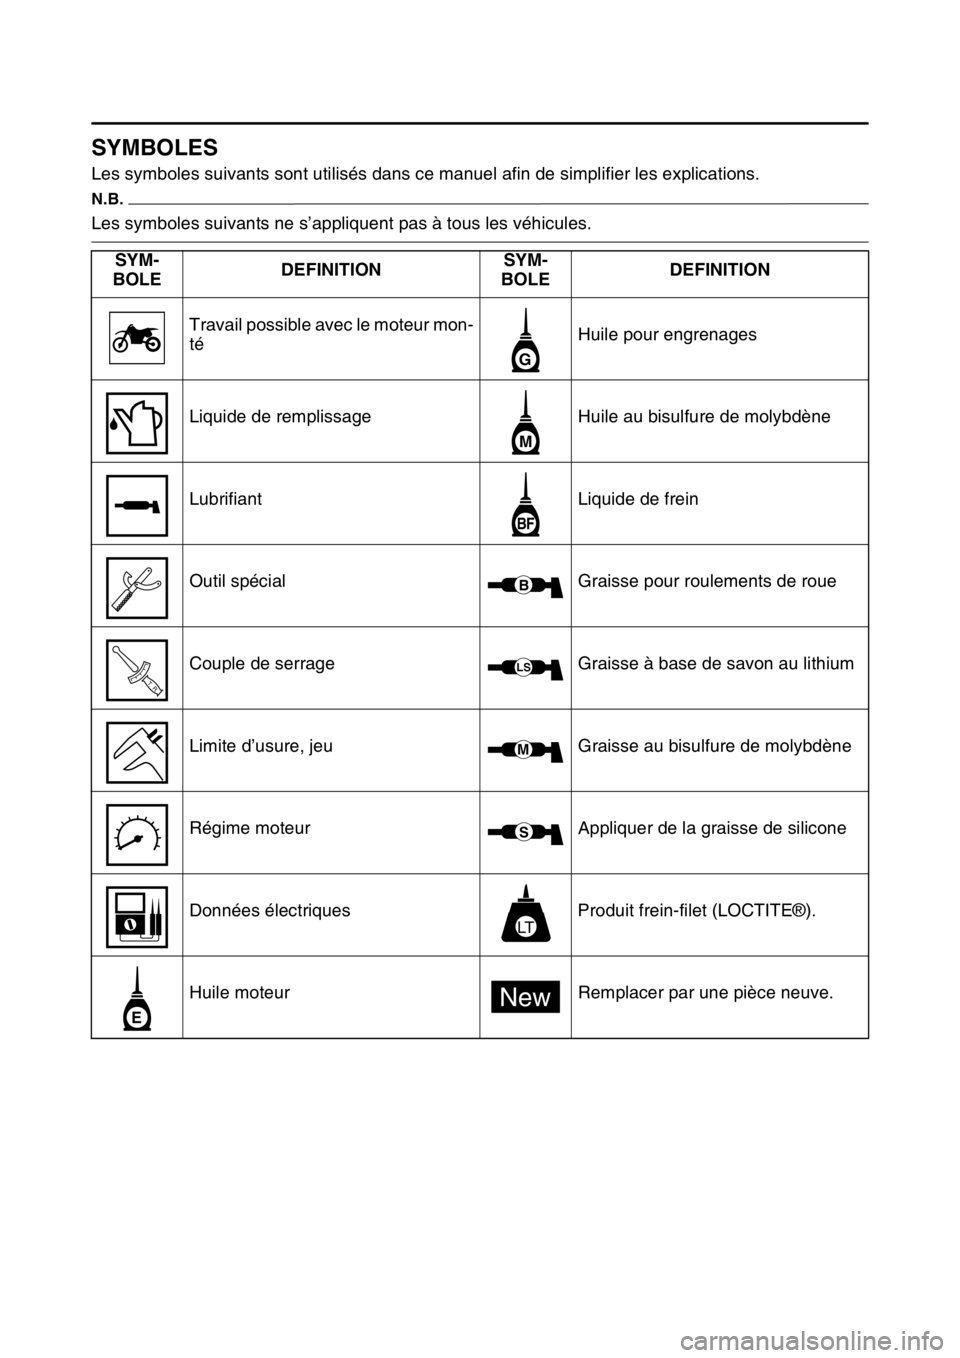 YAMAHA WR 250F 2017  Notices Demploi (in French) FAS2GB2007
SYMBOLES
Les symboles suivants sont utilisés dans ce manuel afin de simplifier les explications.
N.B.
Les symboles suivants ne s’appliquent pas à tous les véhicules.
SYM-
BOLEDEFINITIO